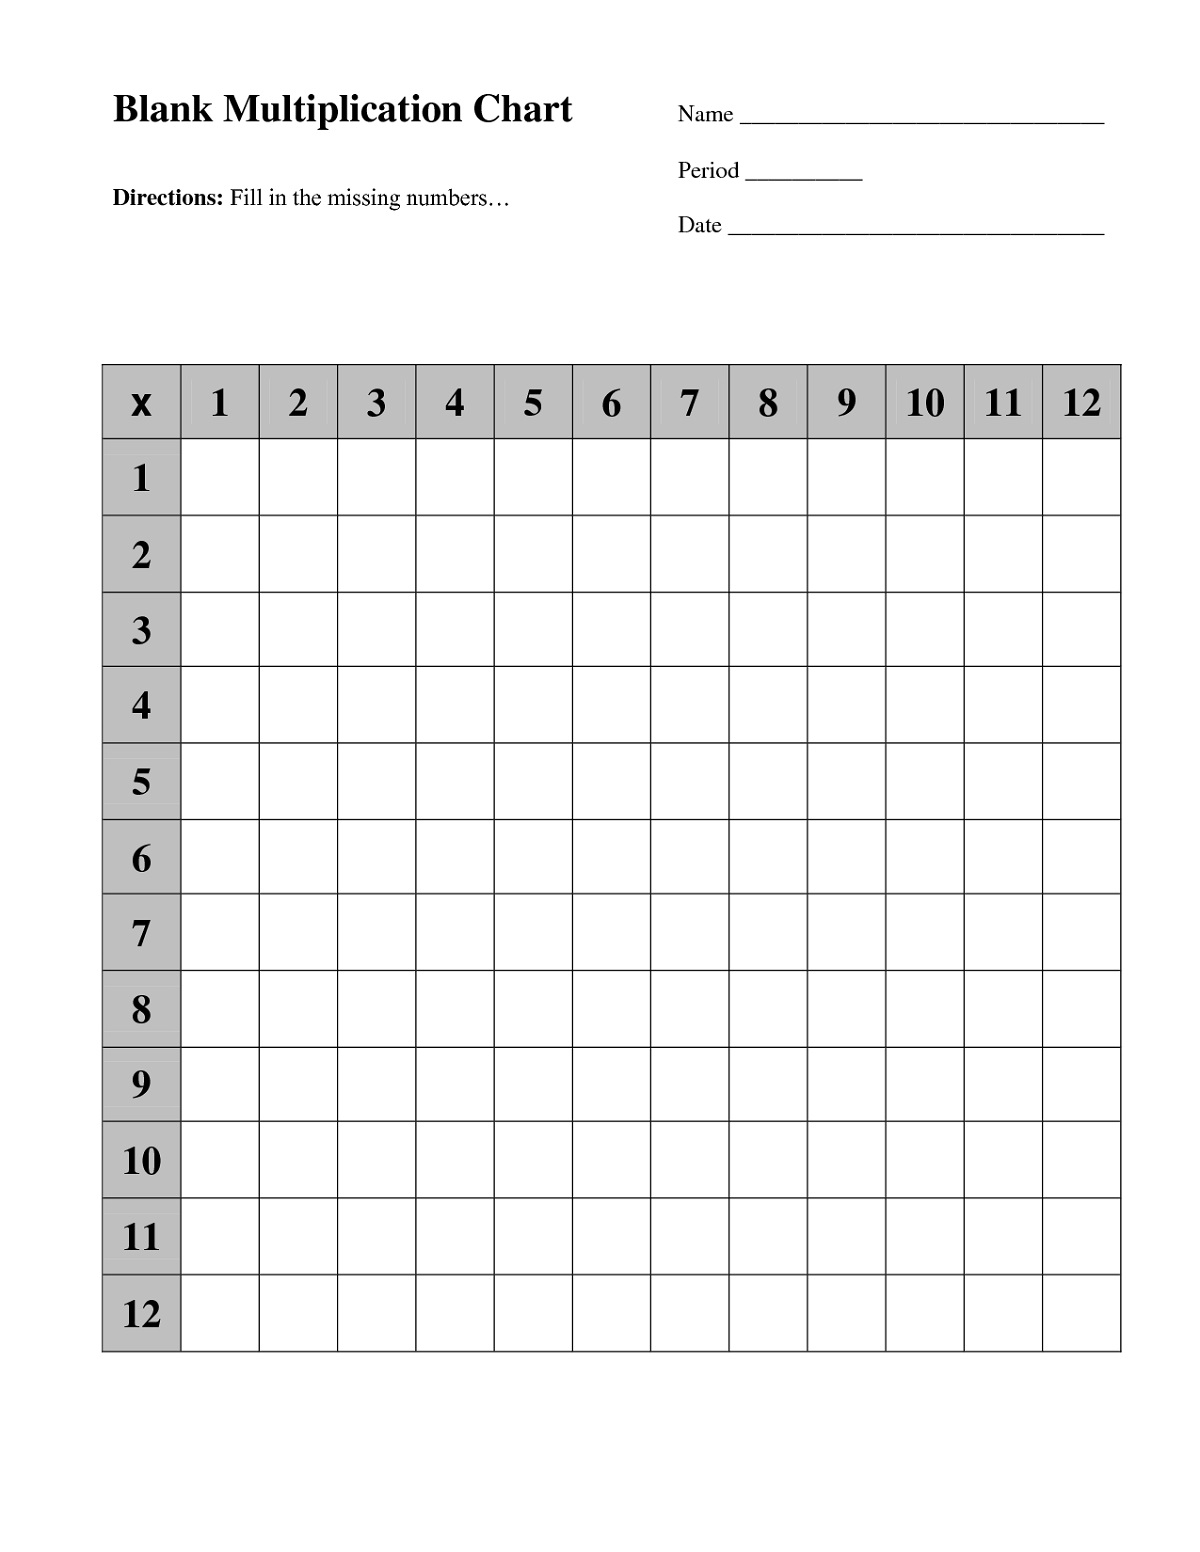 Blank Multiplication Chart Packver